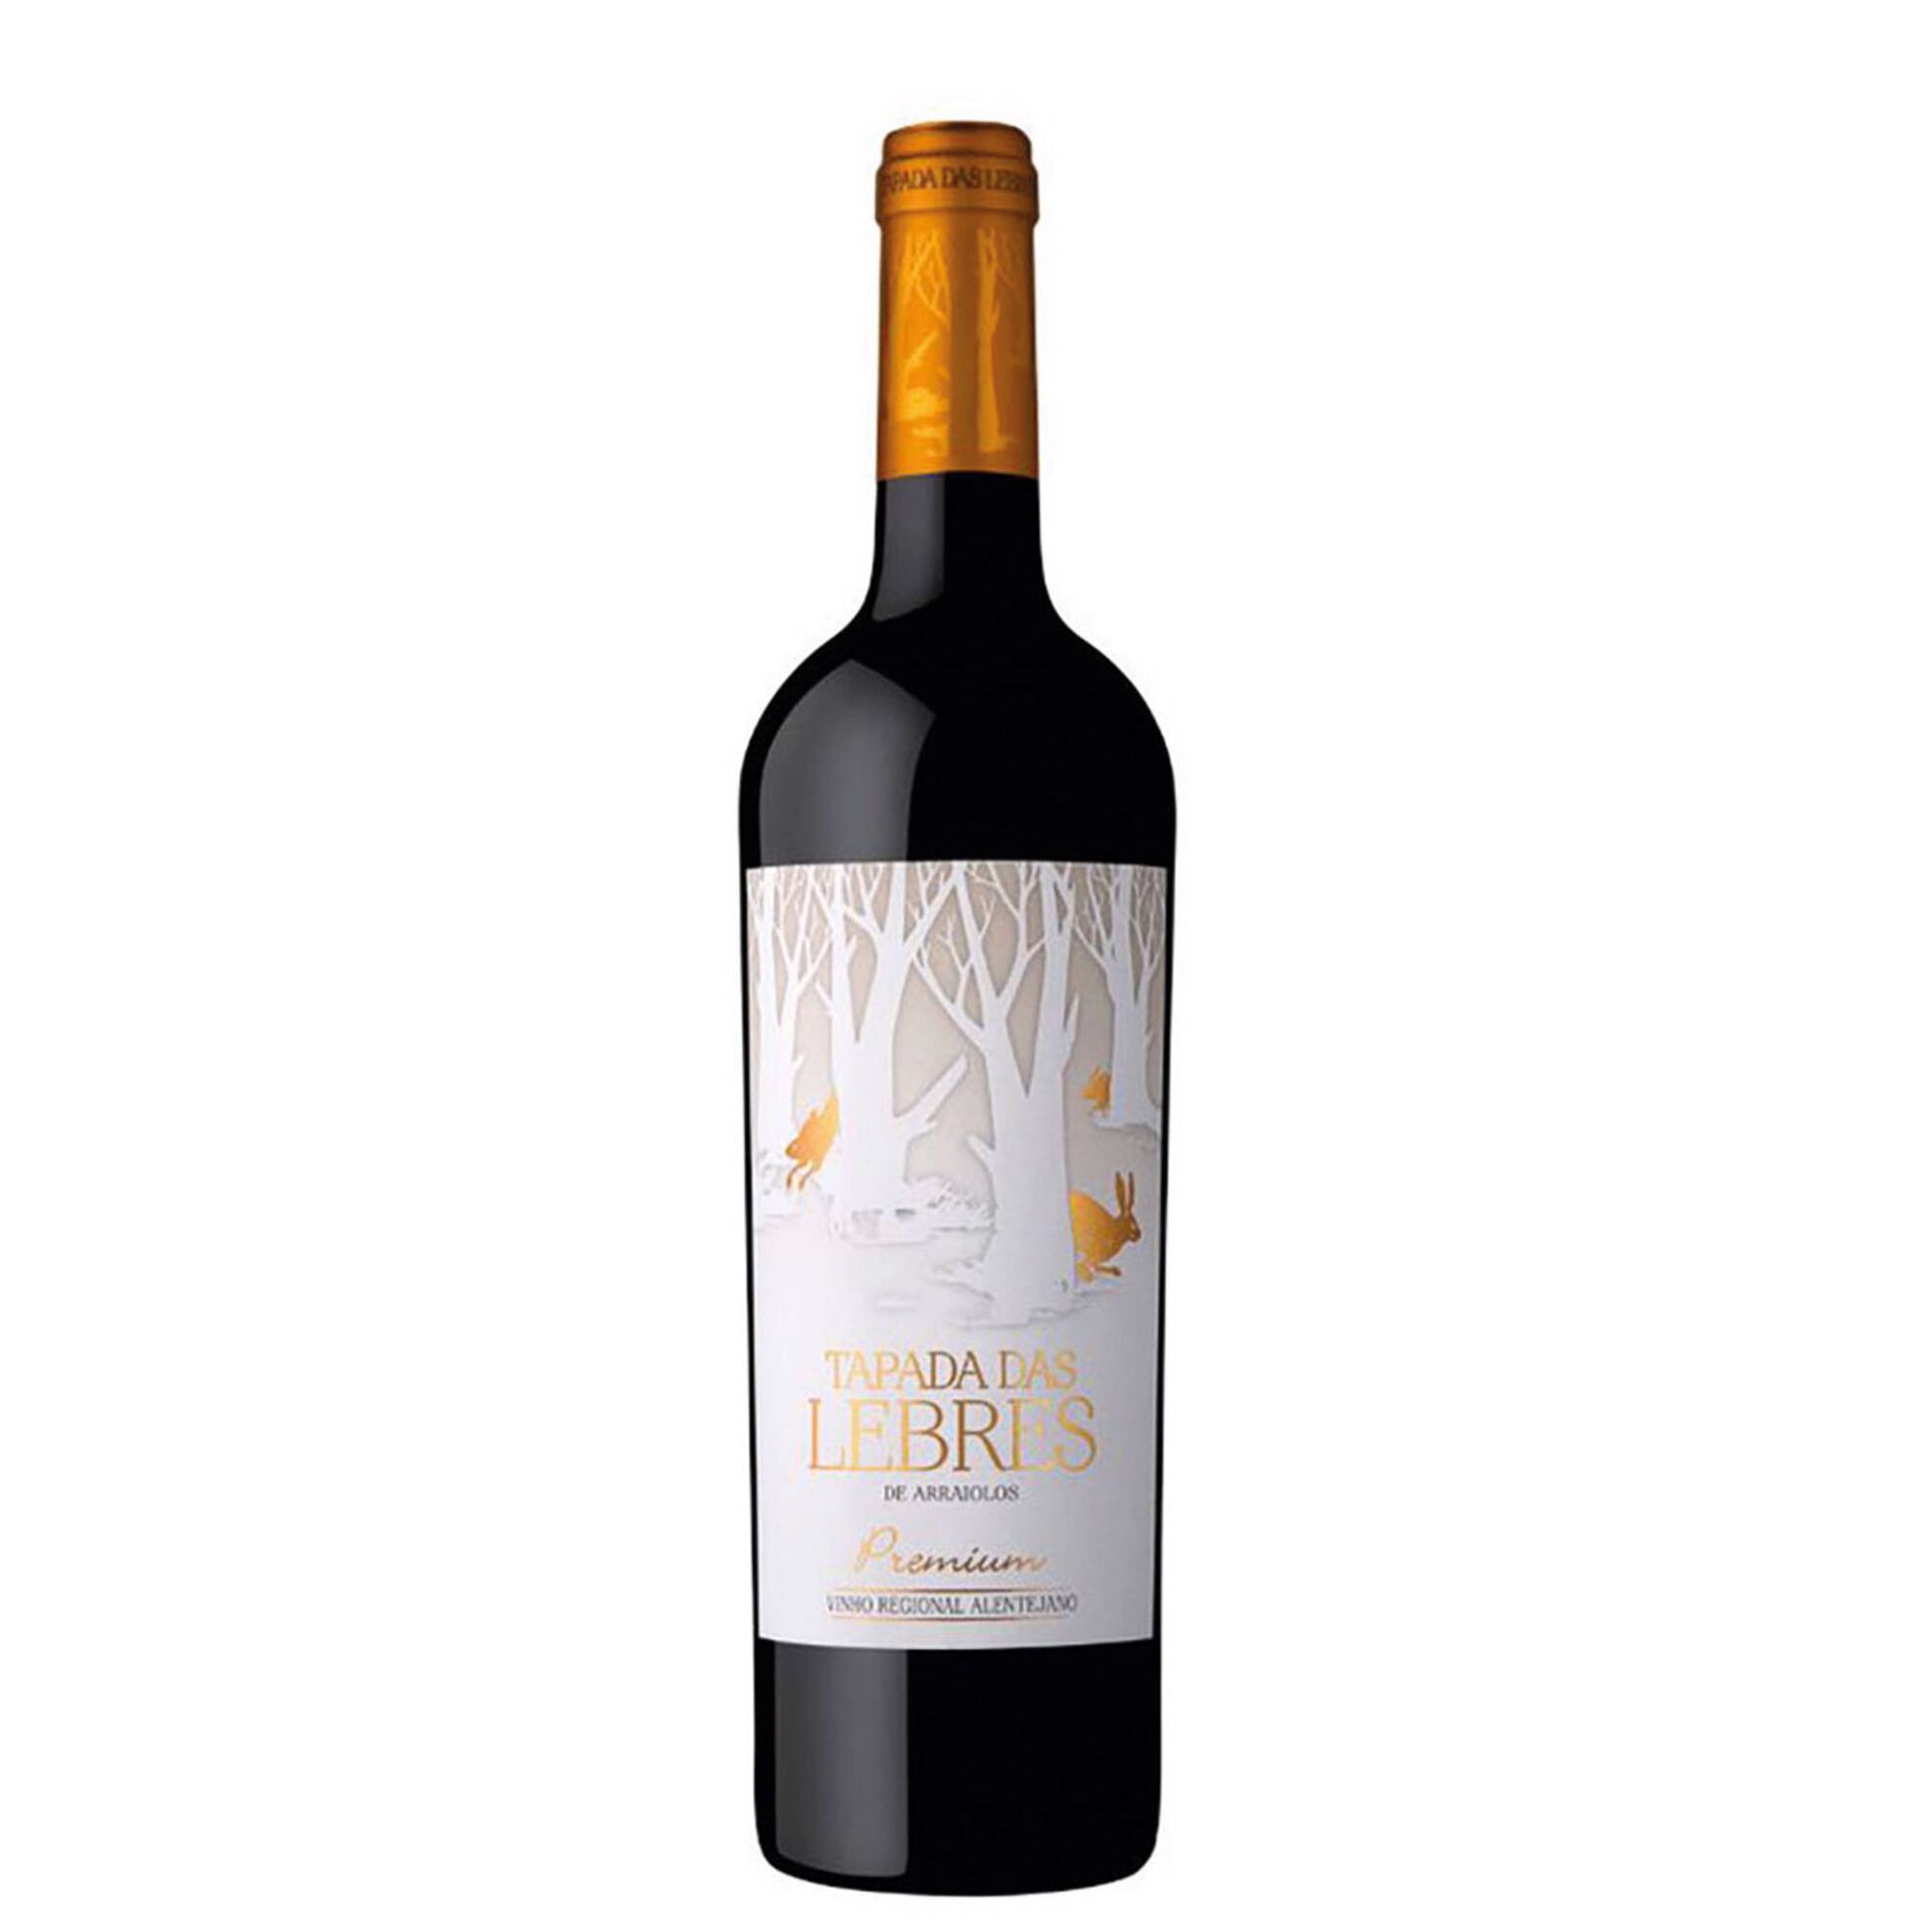 Tapada das Lebres Premium Regional Alentejano Vinho Tinto